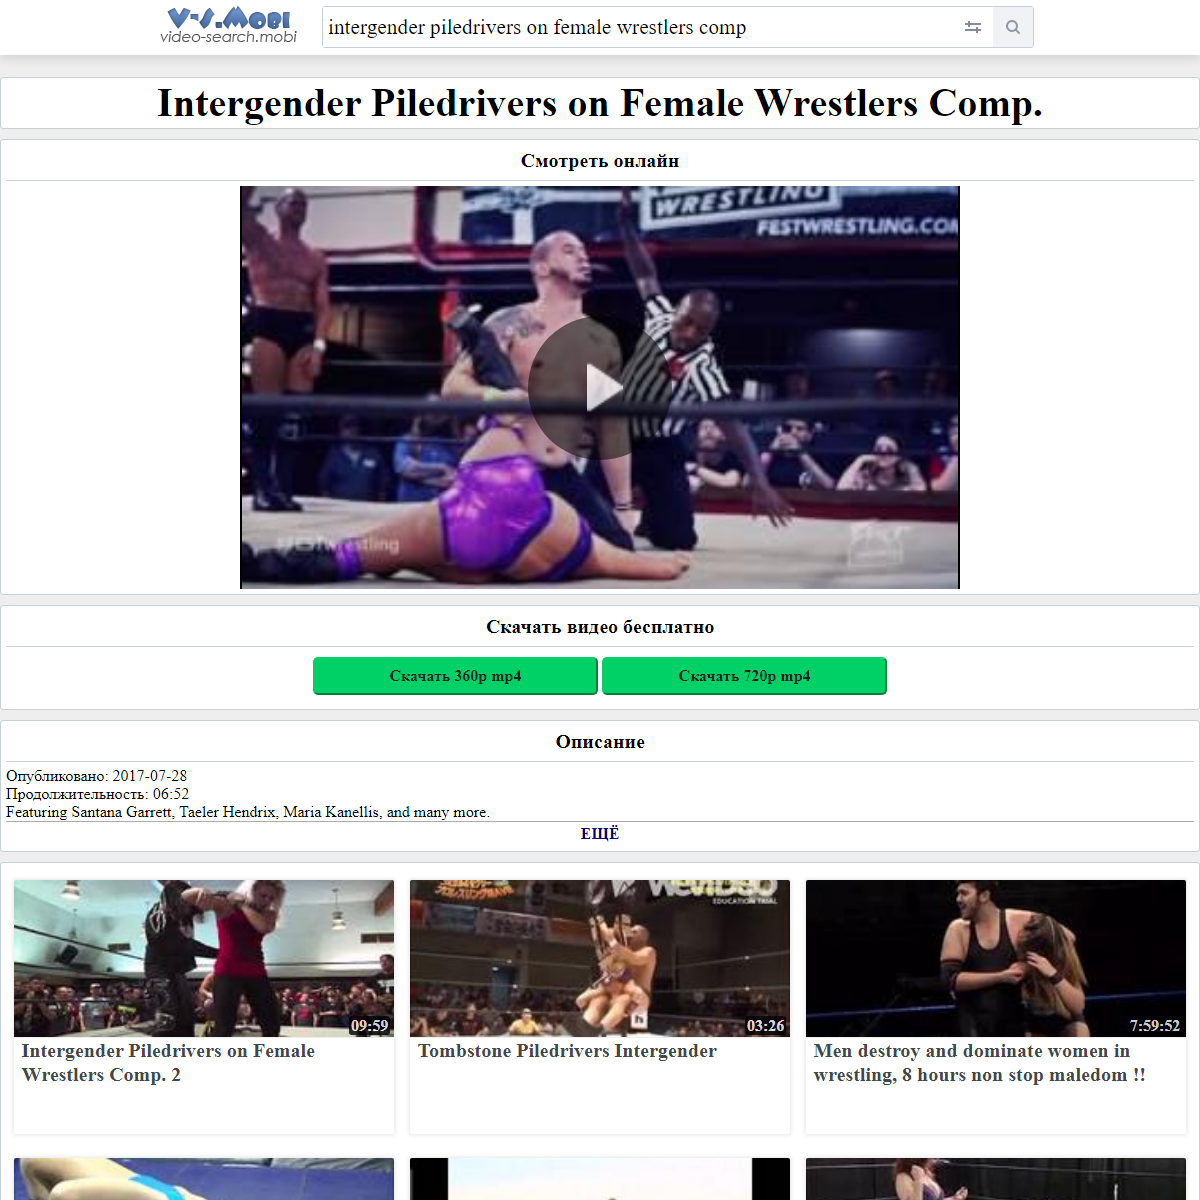 A complete backup of https://v-s.mobi/intergender-piledrivers-on-female-wrestlers-comp-06:52